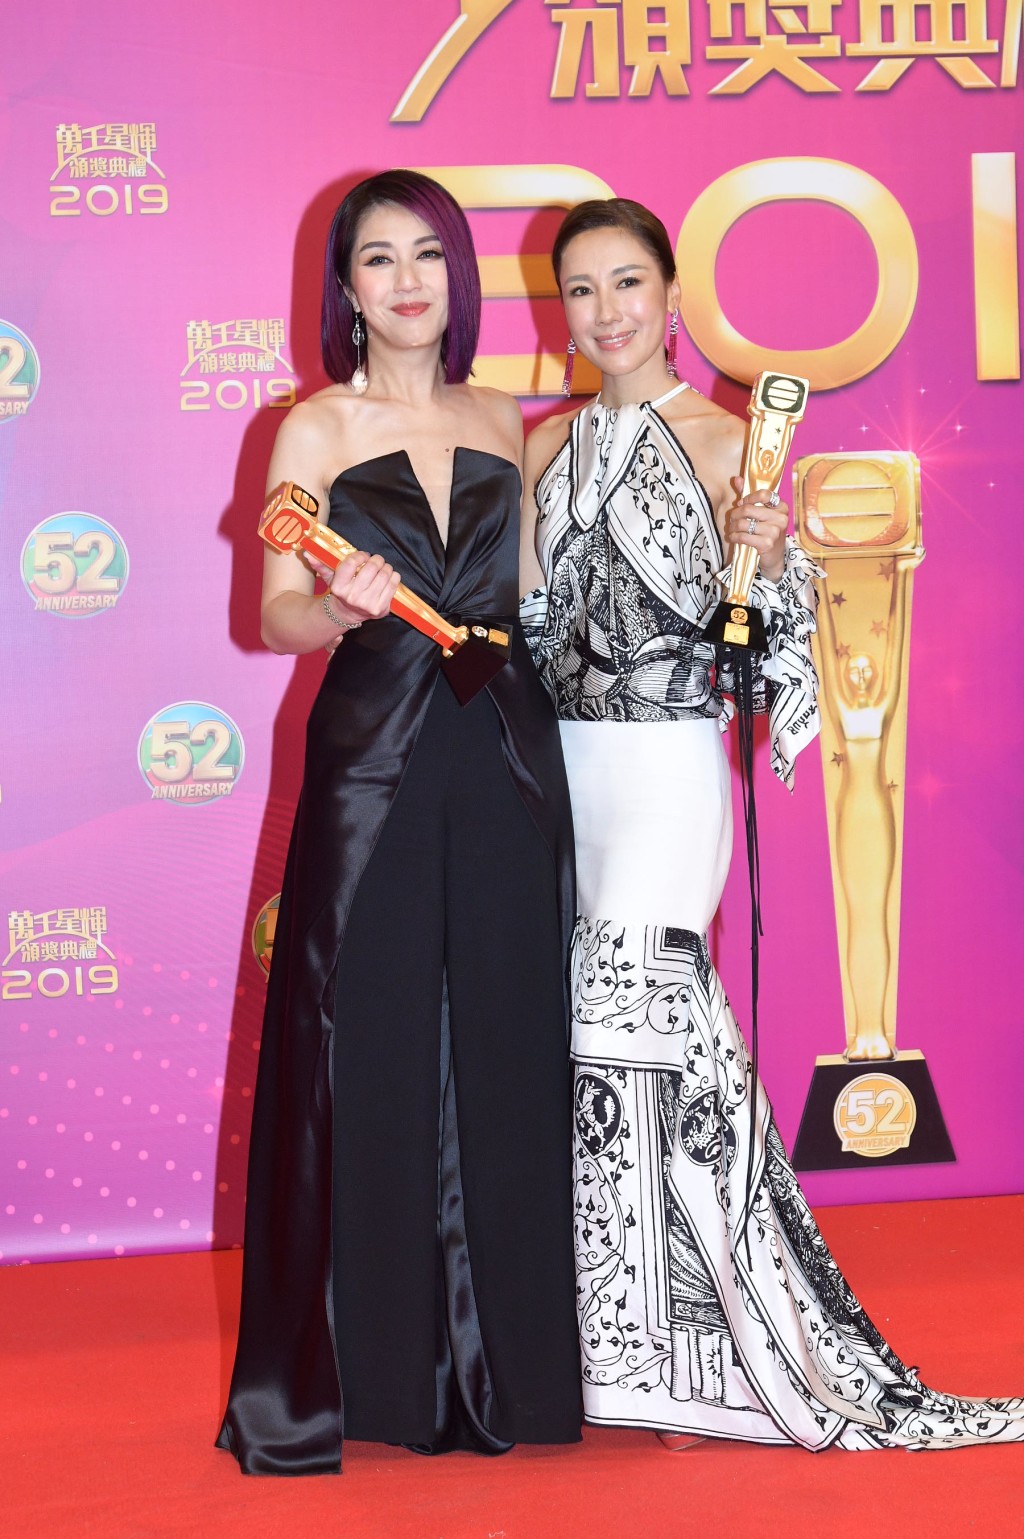 当时李施嬅与杨千嬅共同夺得「最受欢迎电视女角色」，视后输给《铁探》的惠英红。